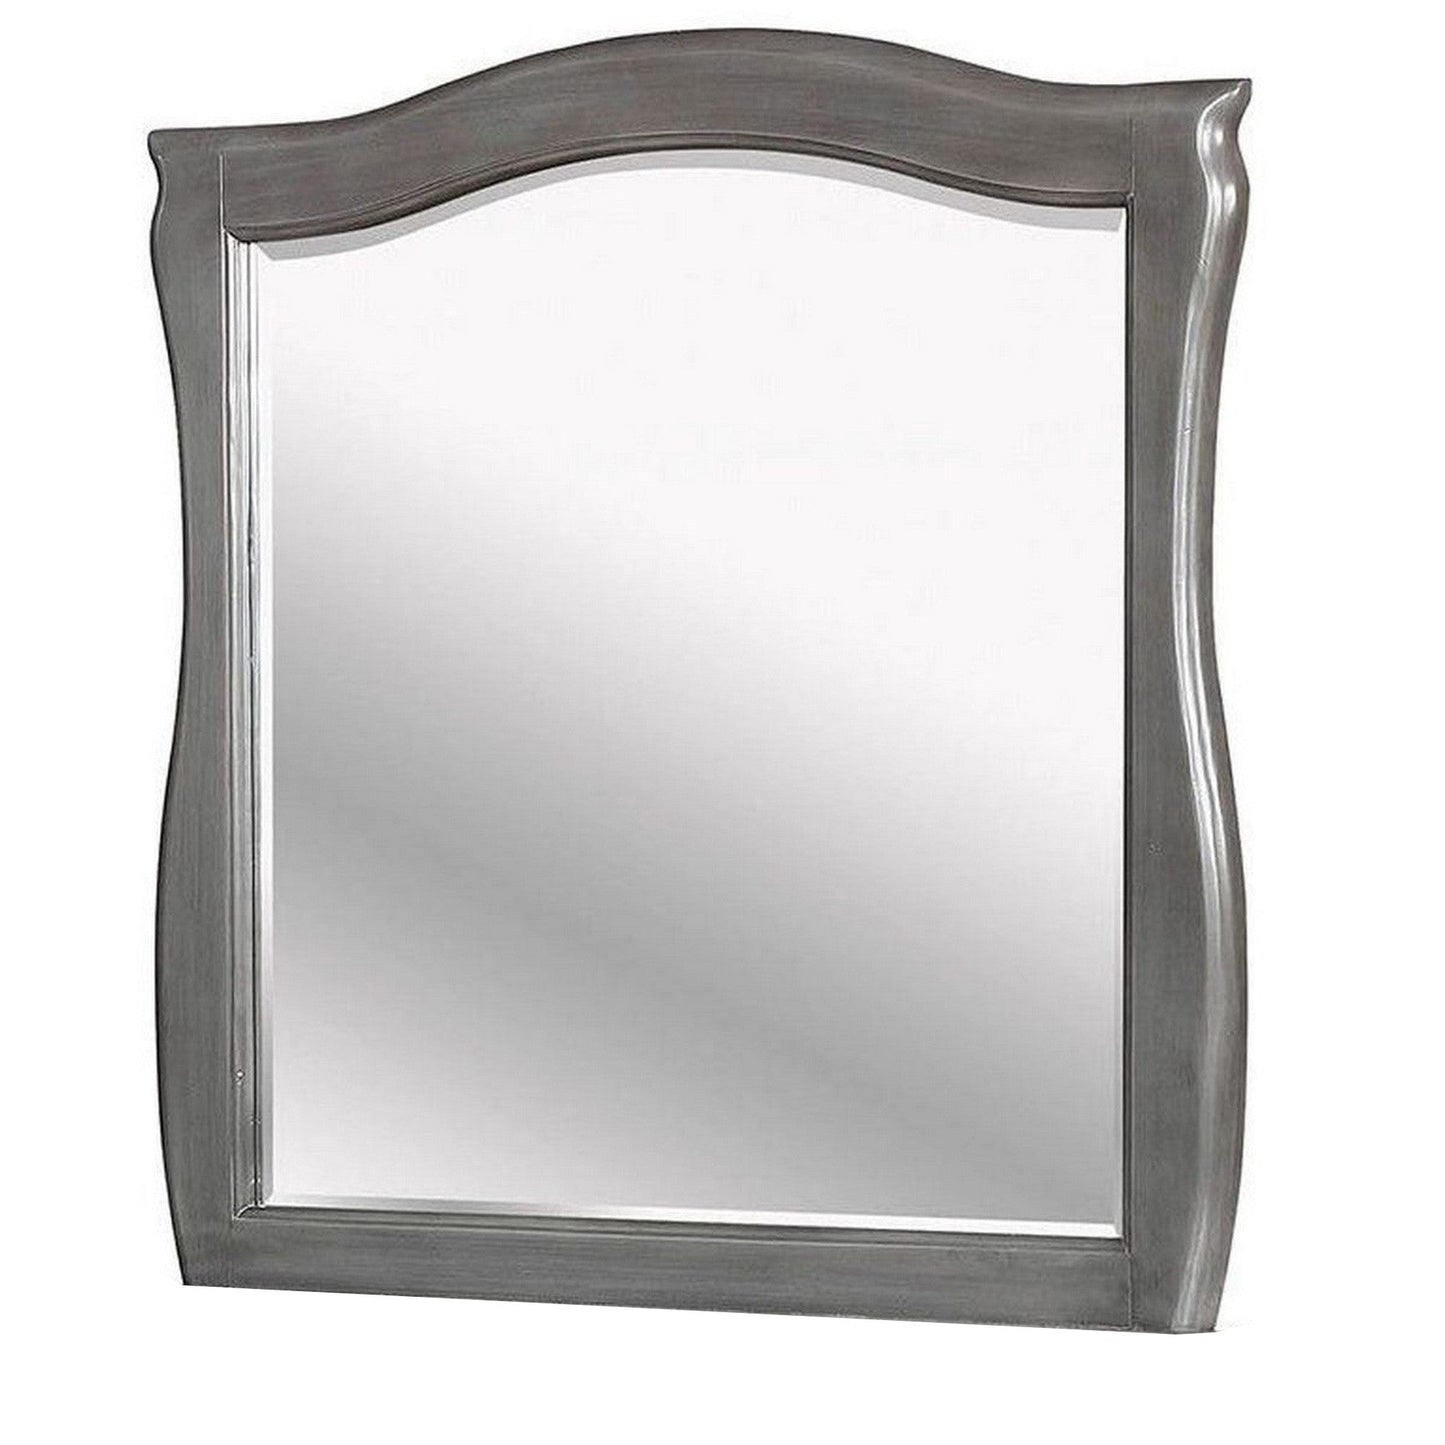 Benzara 42" Gray Mirror With Camelback Wooden Frame